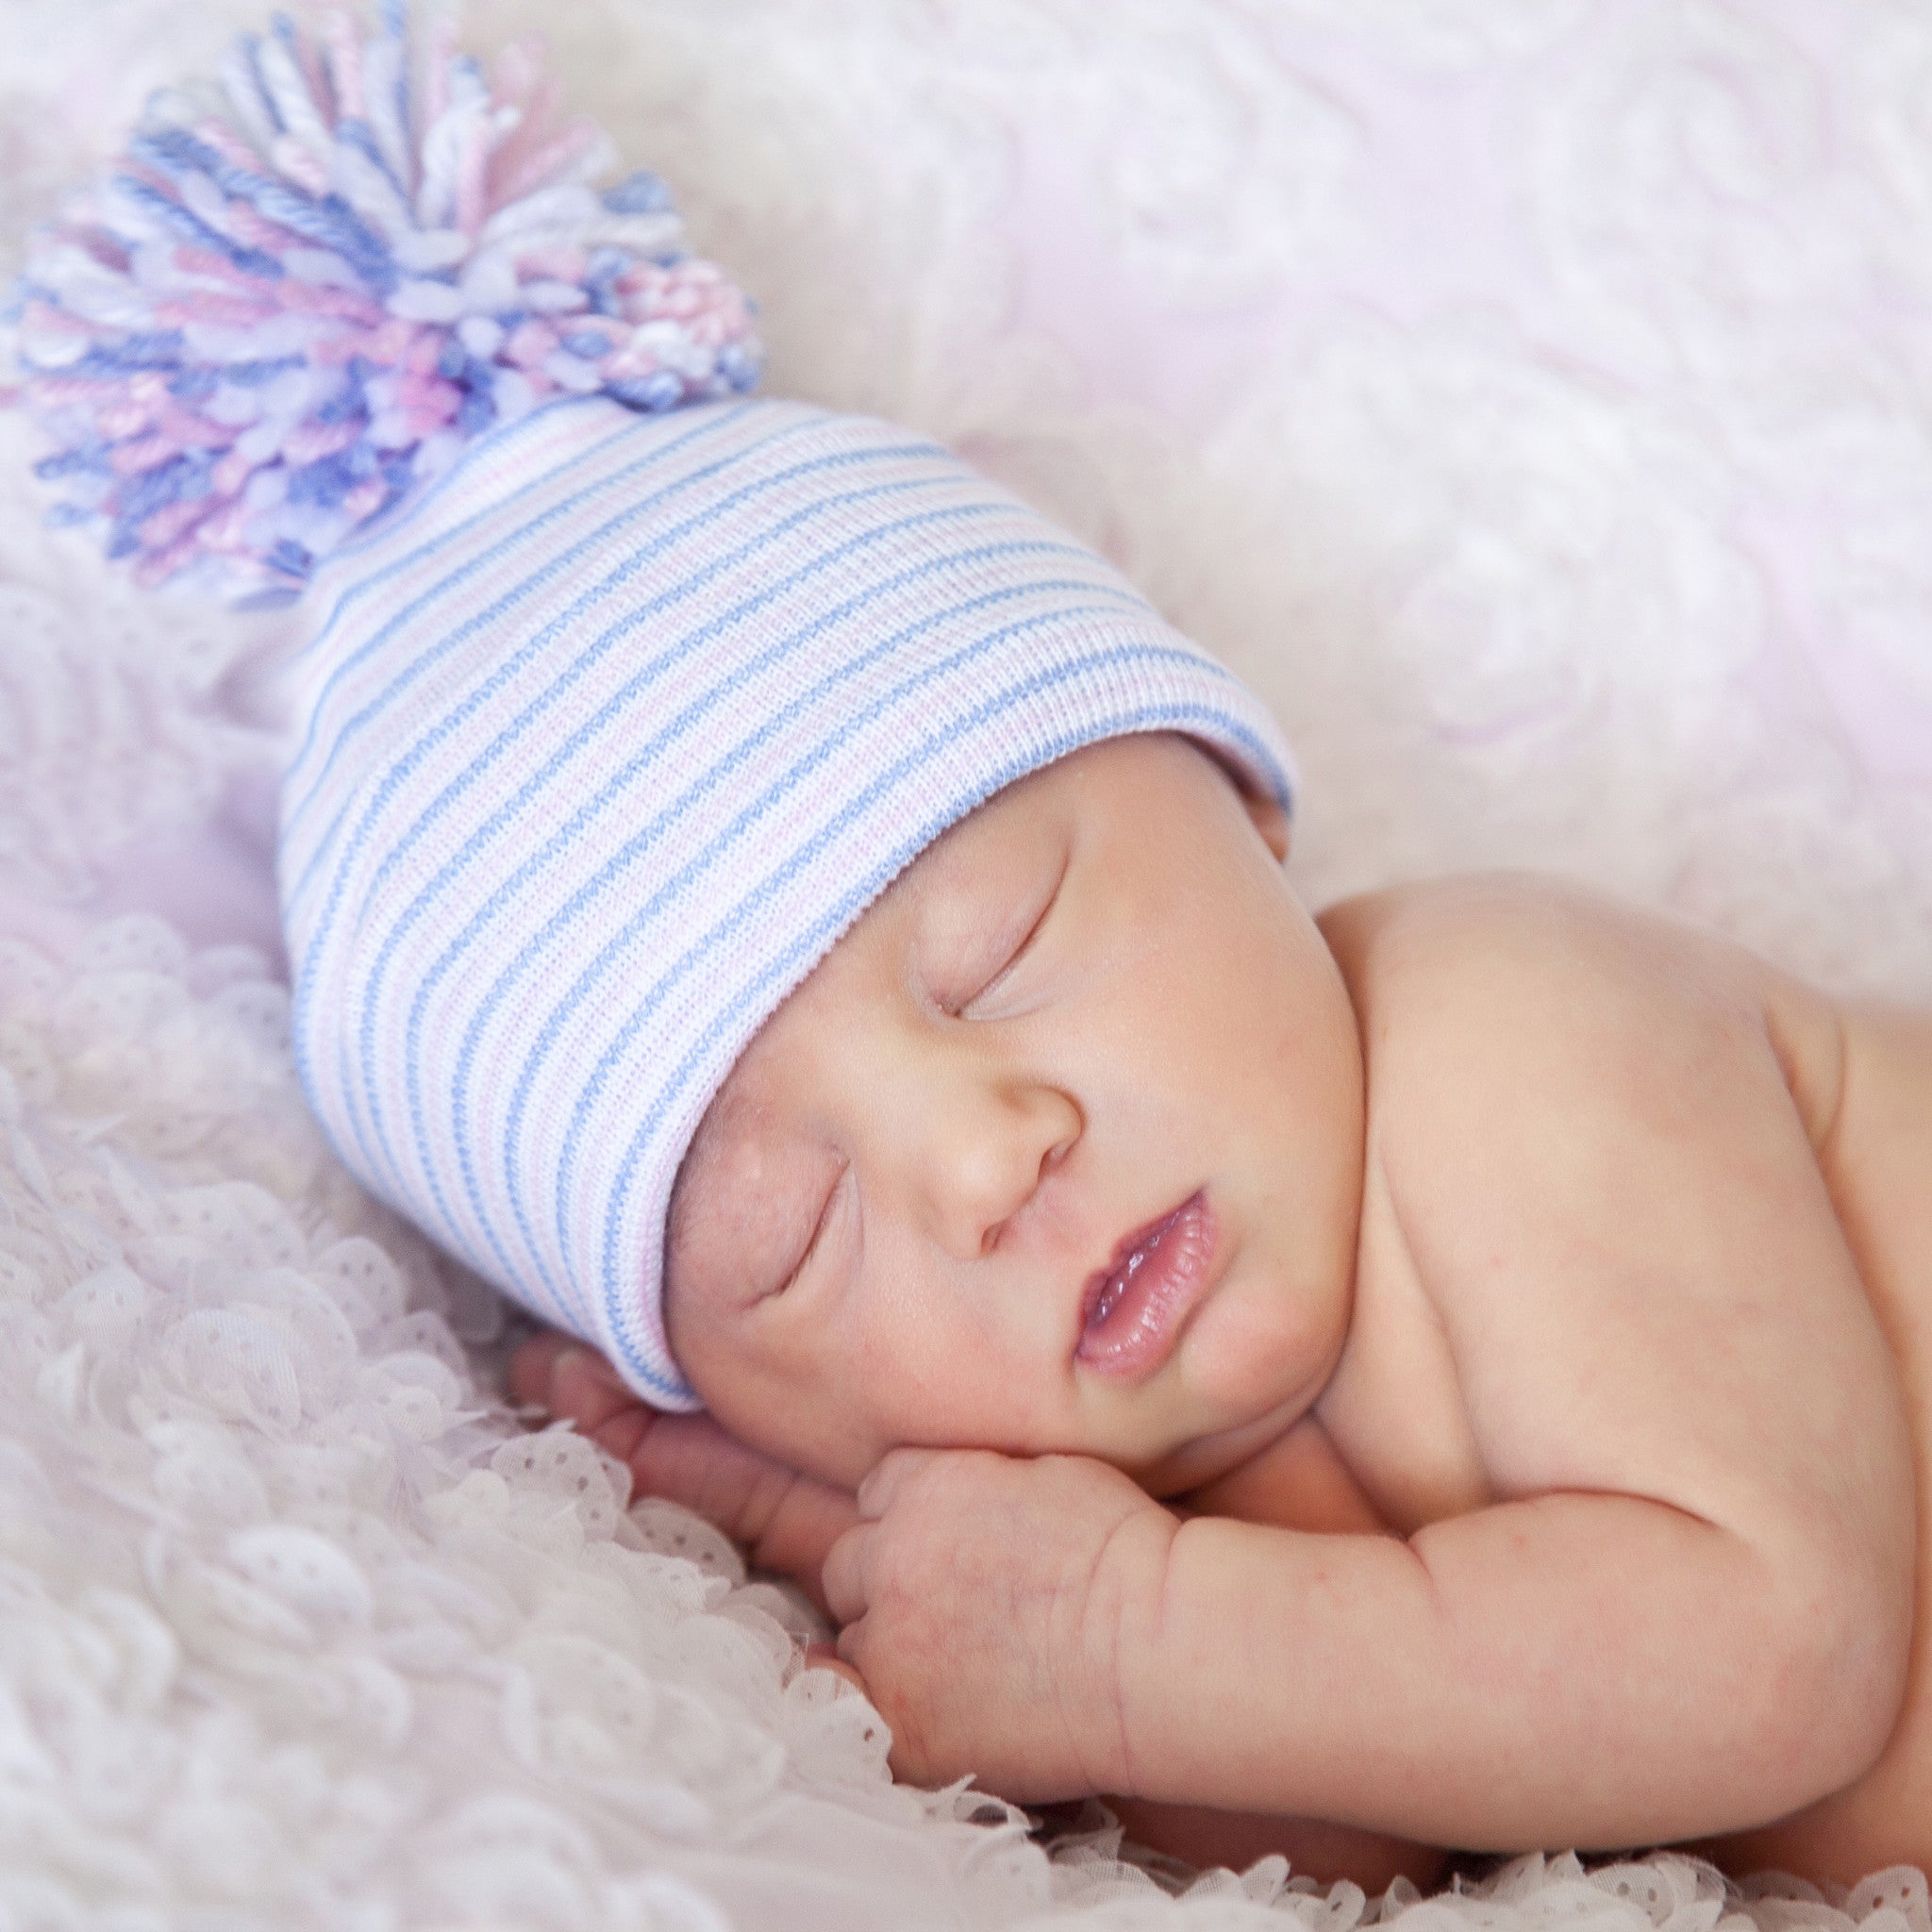 BabyMelons Newborn First Christmas Hospital Beanie Hat with Red Pom Pom, White Color Infant Beanie Hat Newborn Pom Pom Hat